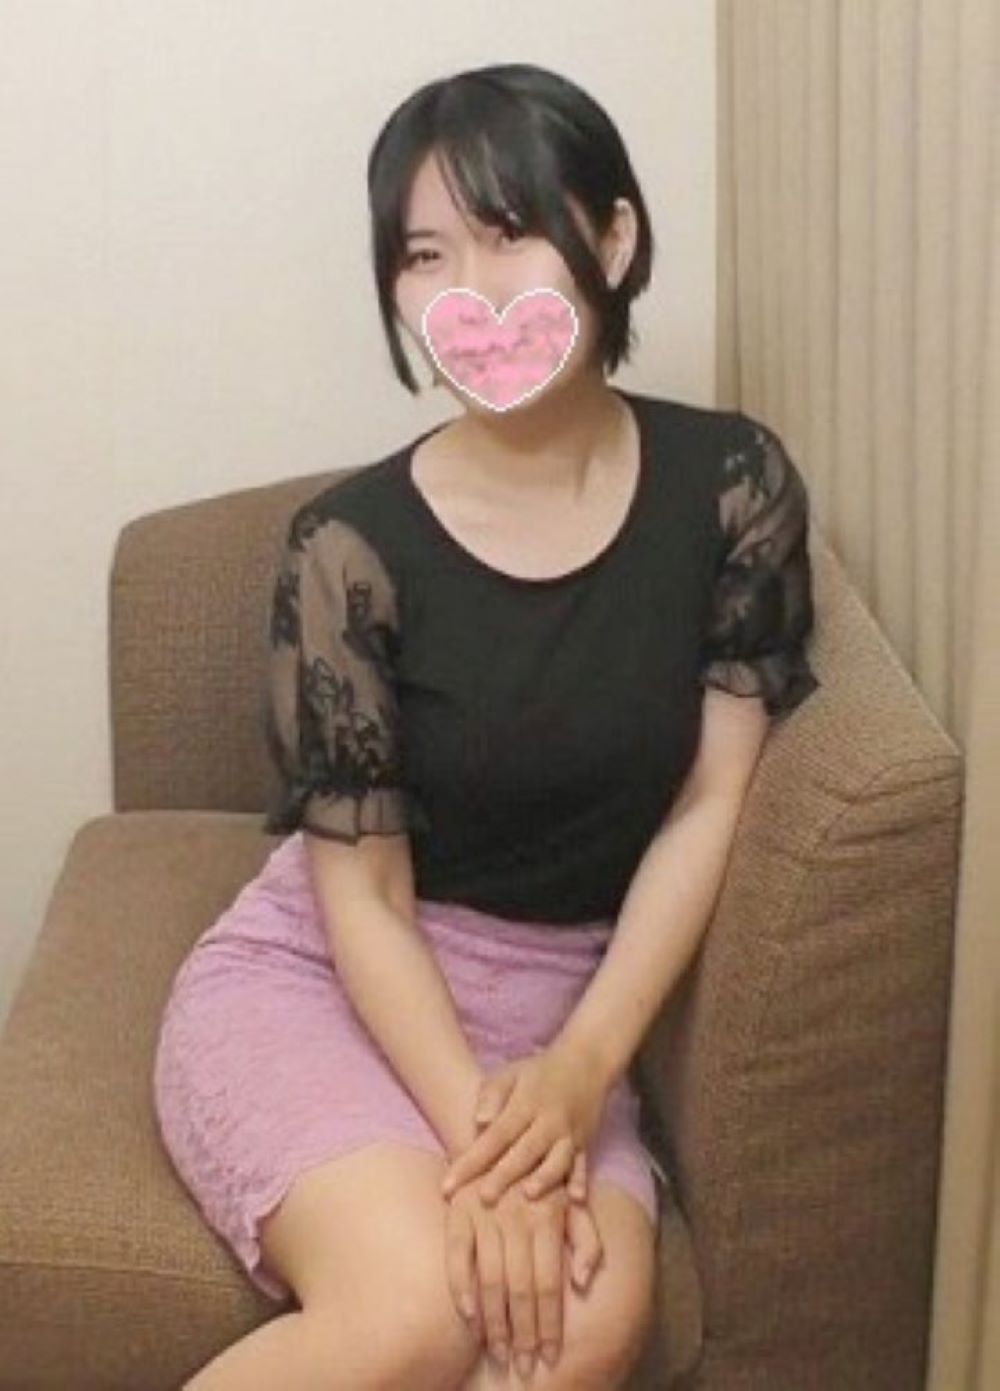 【無修正】東京新宿区某大学病院勤務。24歳Gカップ看護師は底なしな淫乱だった。新規融資で300。膣奥どっぷりナマナカダシ。